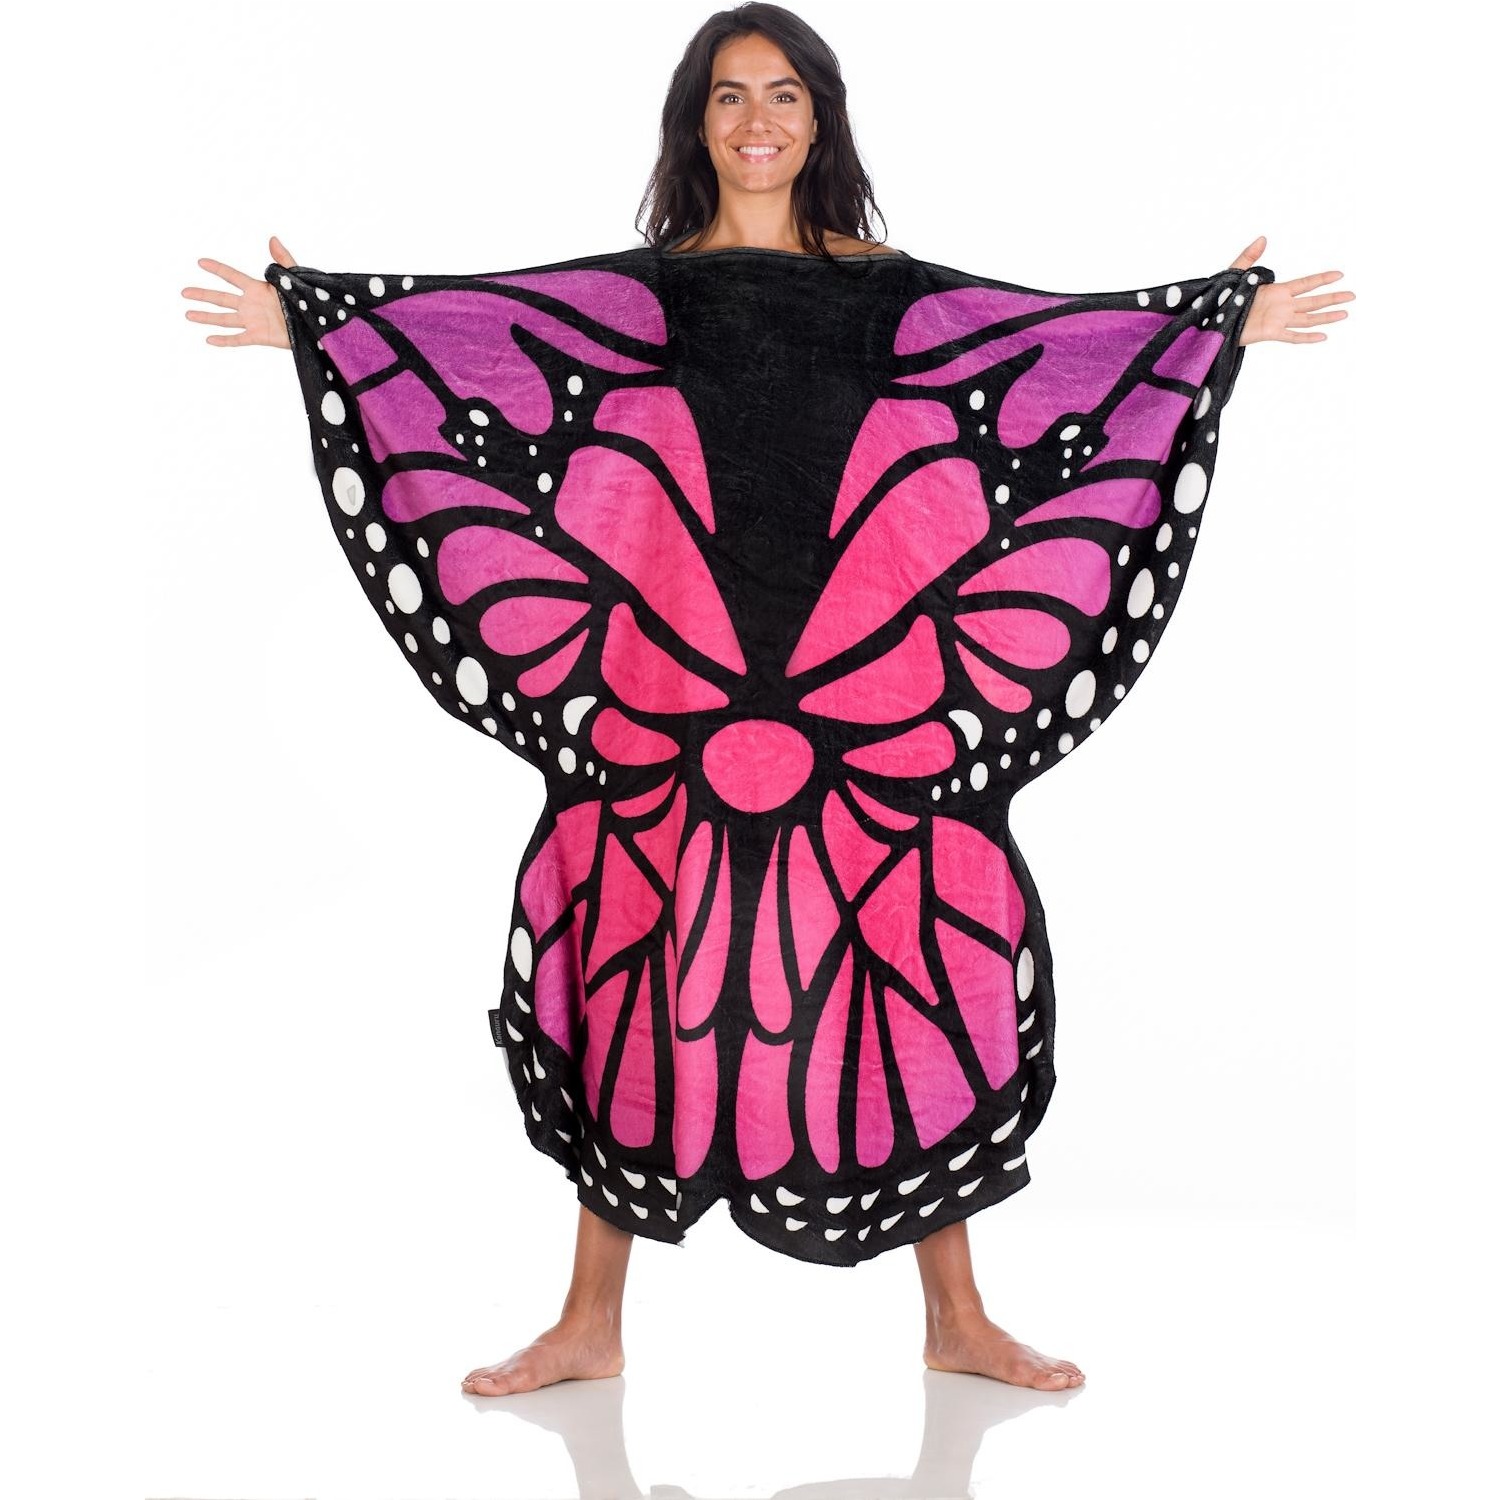 Immagine per Coperta indossabile Kanguru fantasia Butterfly Blanket dimensione 120cm x 120cm da DIMOStore